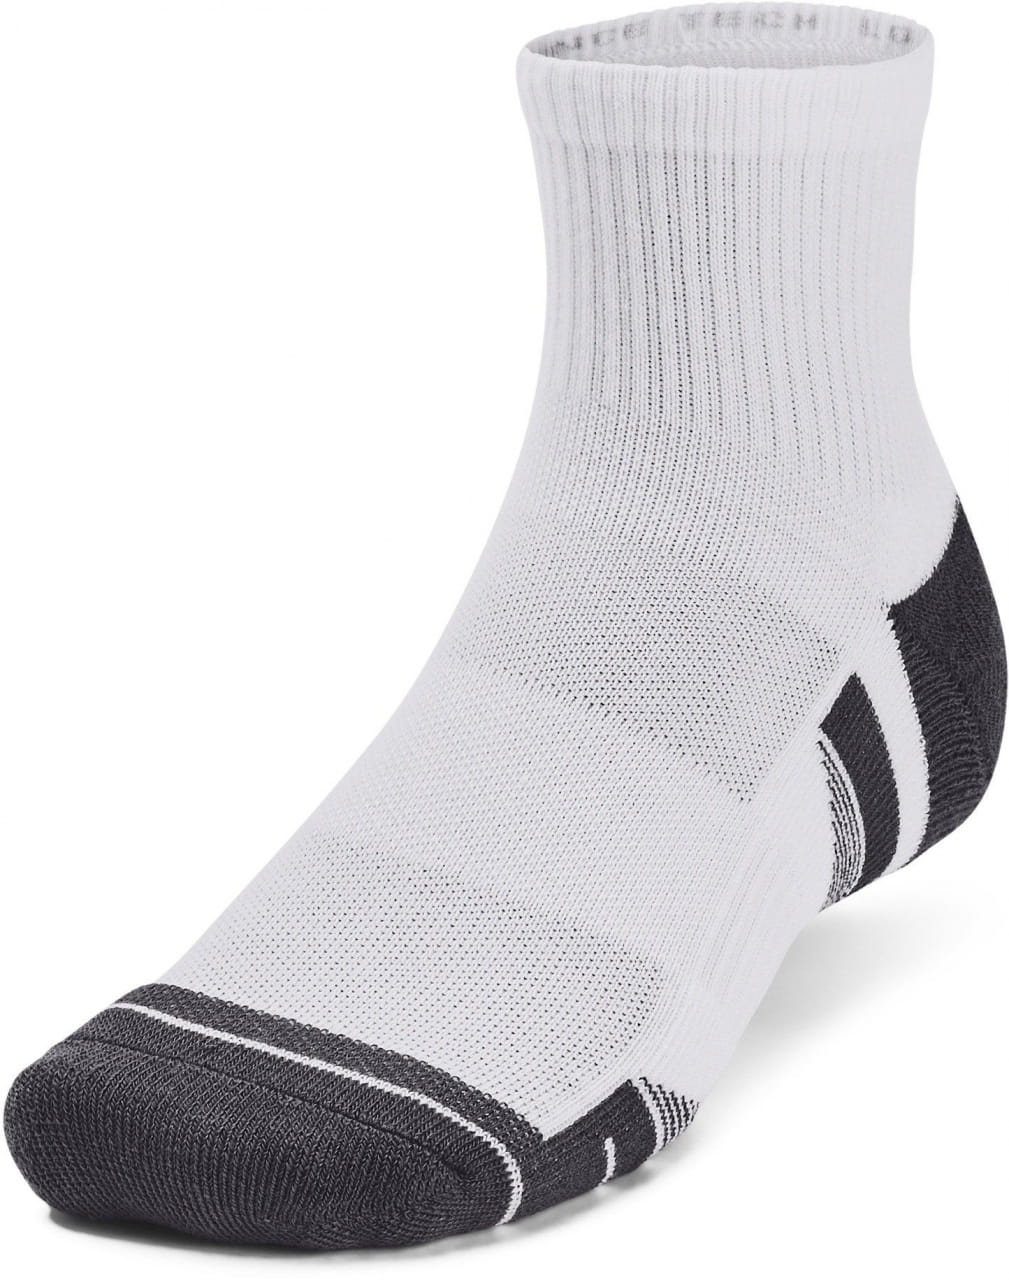 Unisexové sportovní ponožky Under Armour Performance Tech 3pk Qtr-WHT